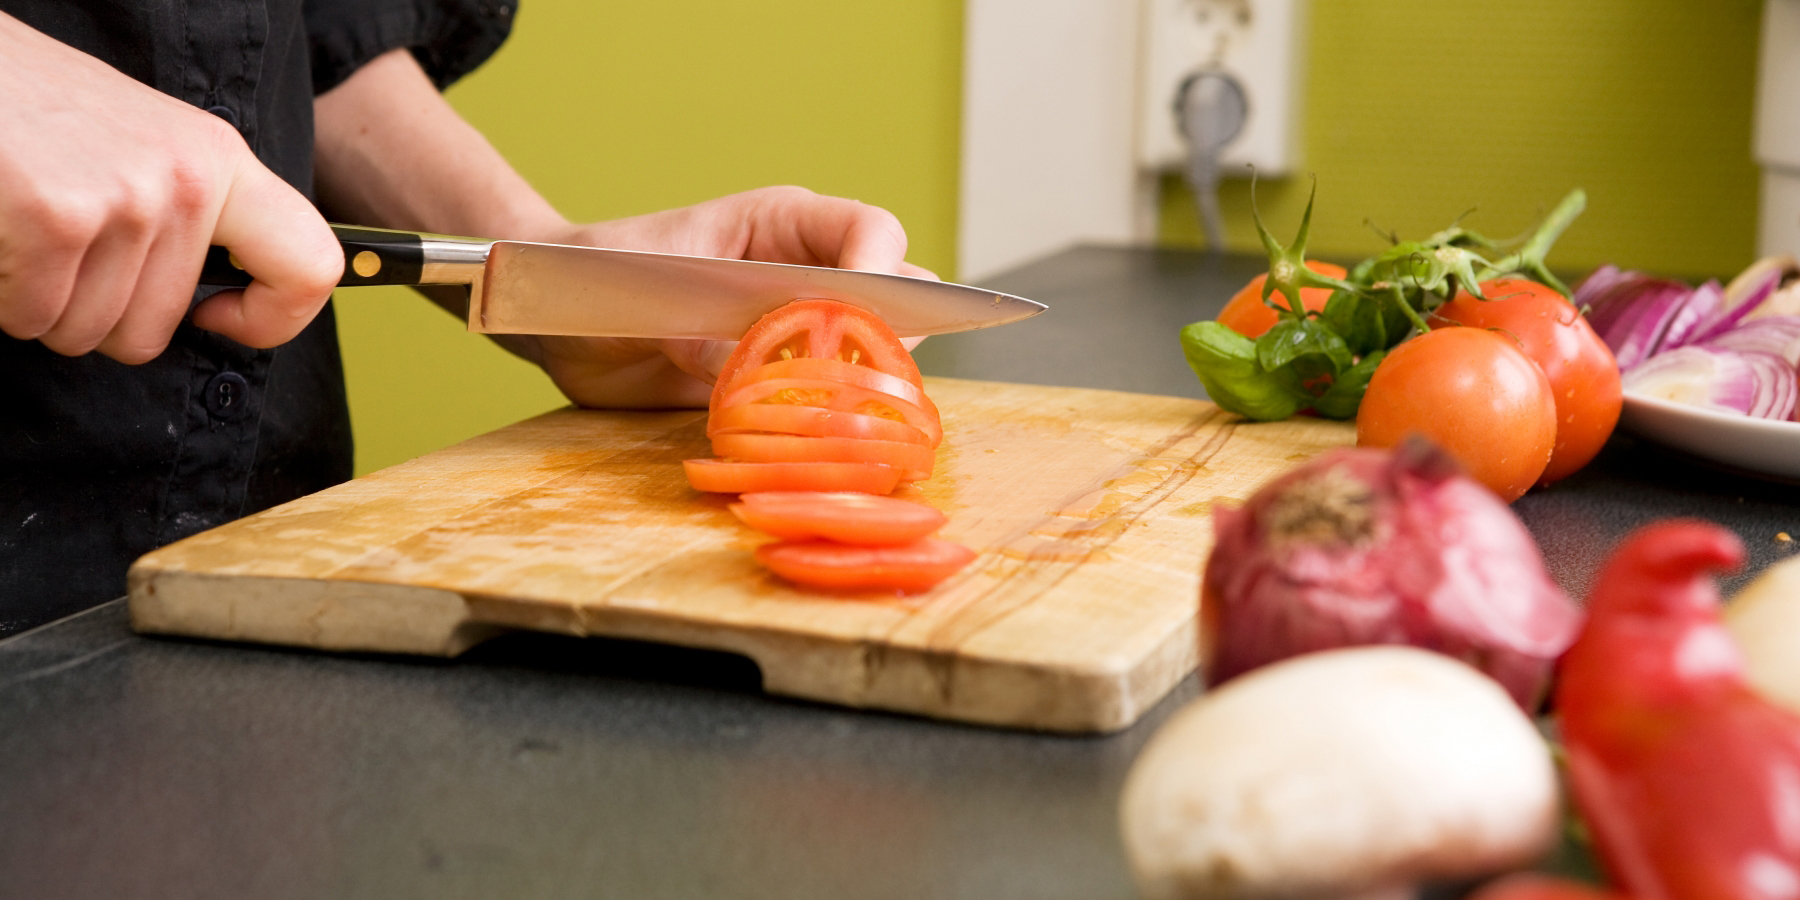 En kock i svart skjorta skär tomater och lök på en skärbräda.